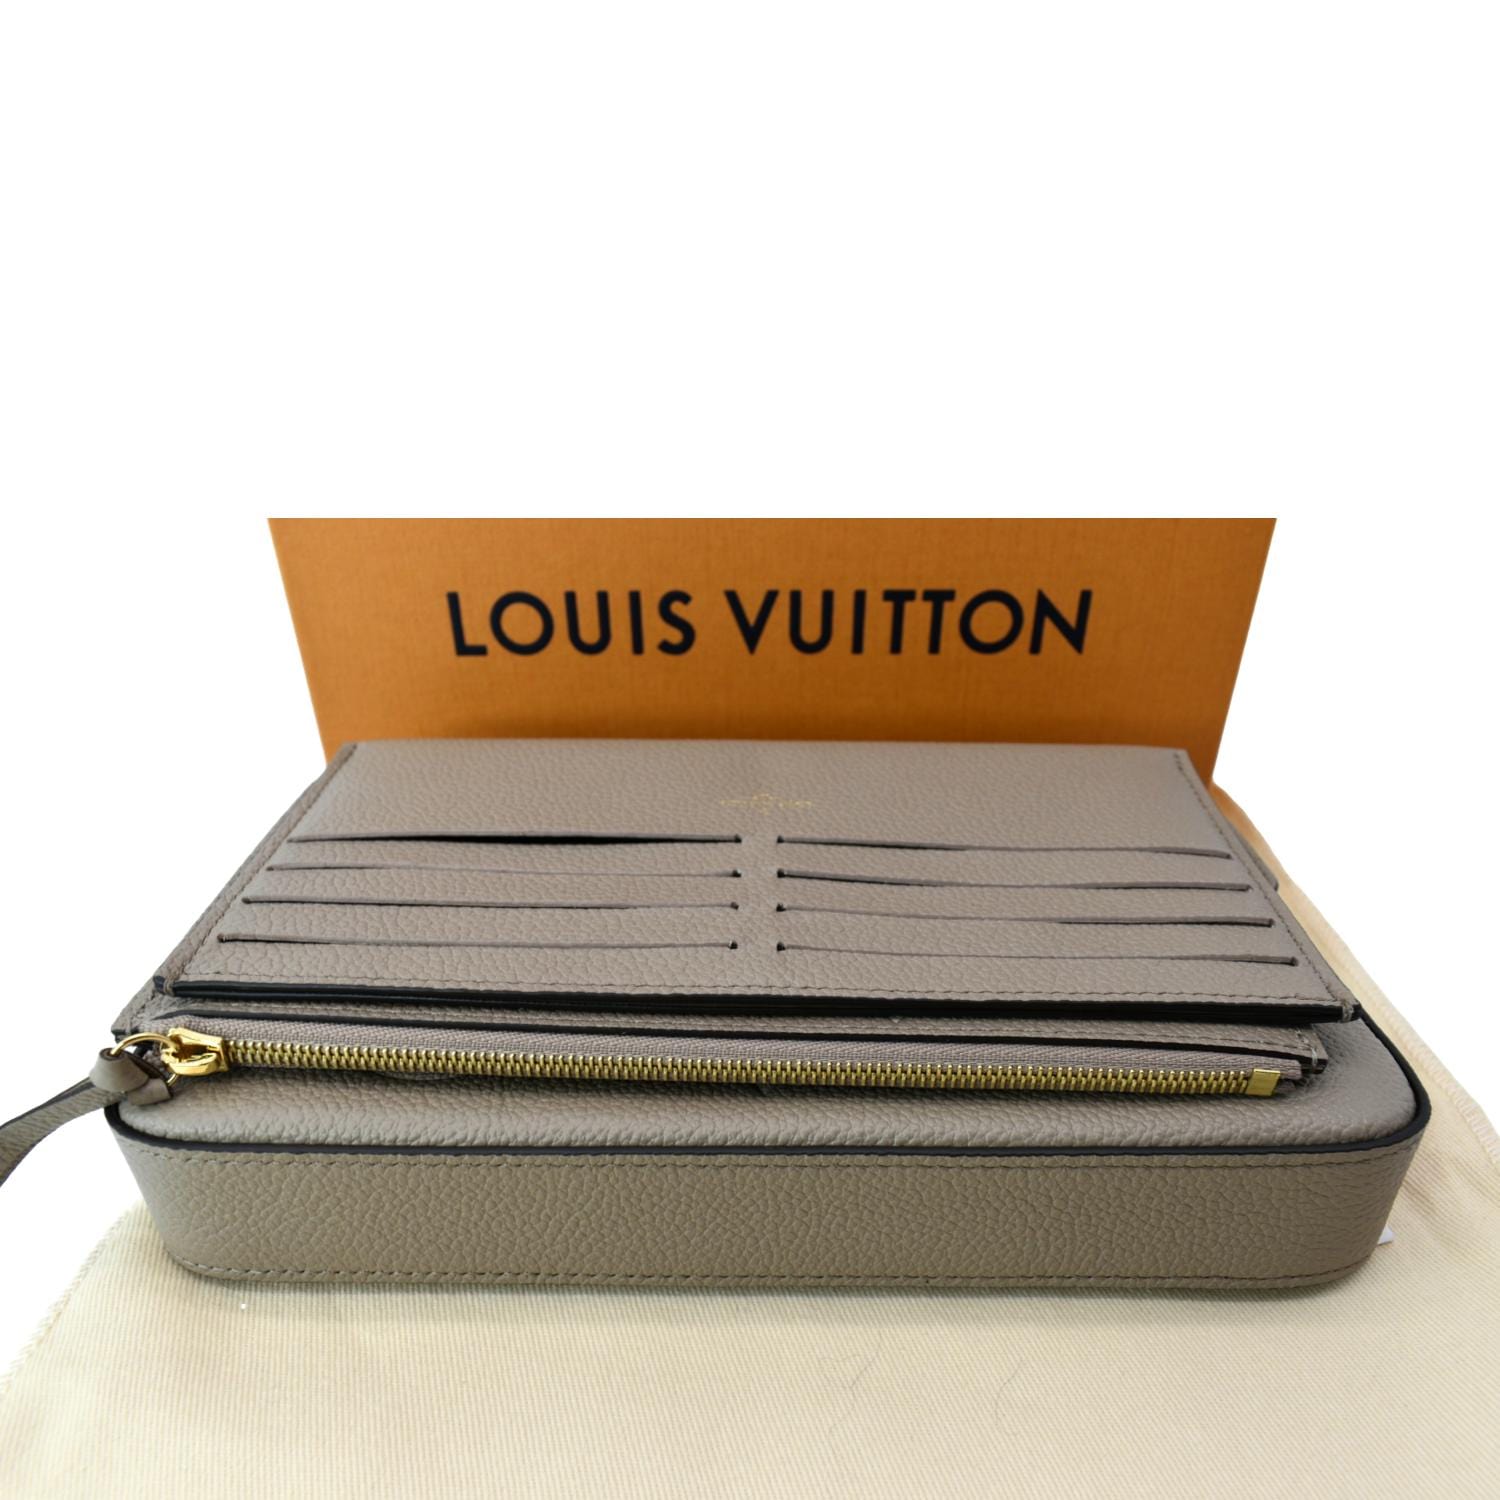 Louis Vuitton - Zippy XL Wallet Handbag in Italy